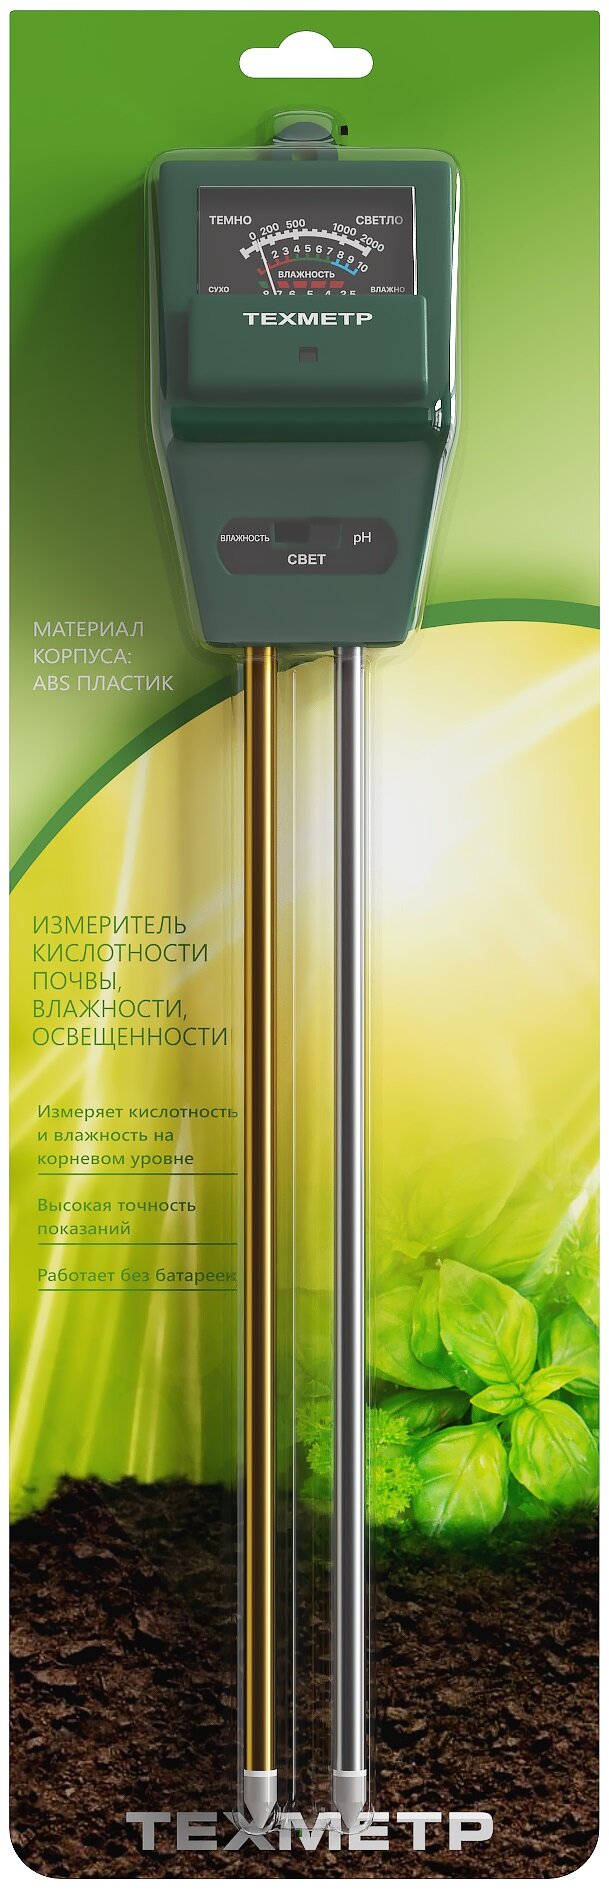 Измеритель кислотности (pH), влажности и освещенности почвы техметр КВО-7 (Зеленый) - фотография № 5